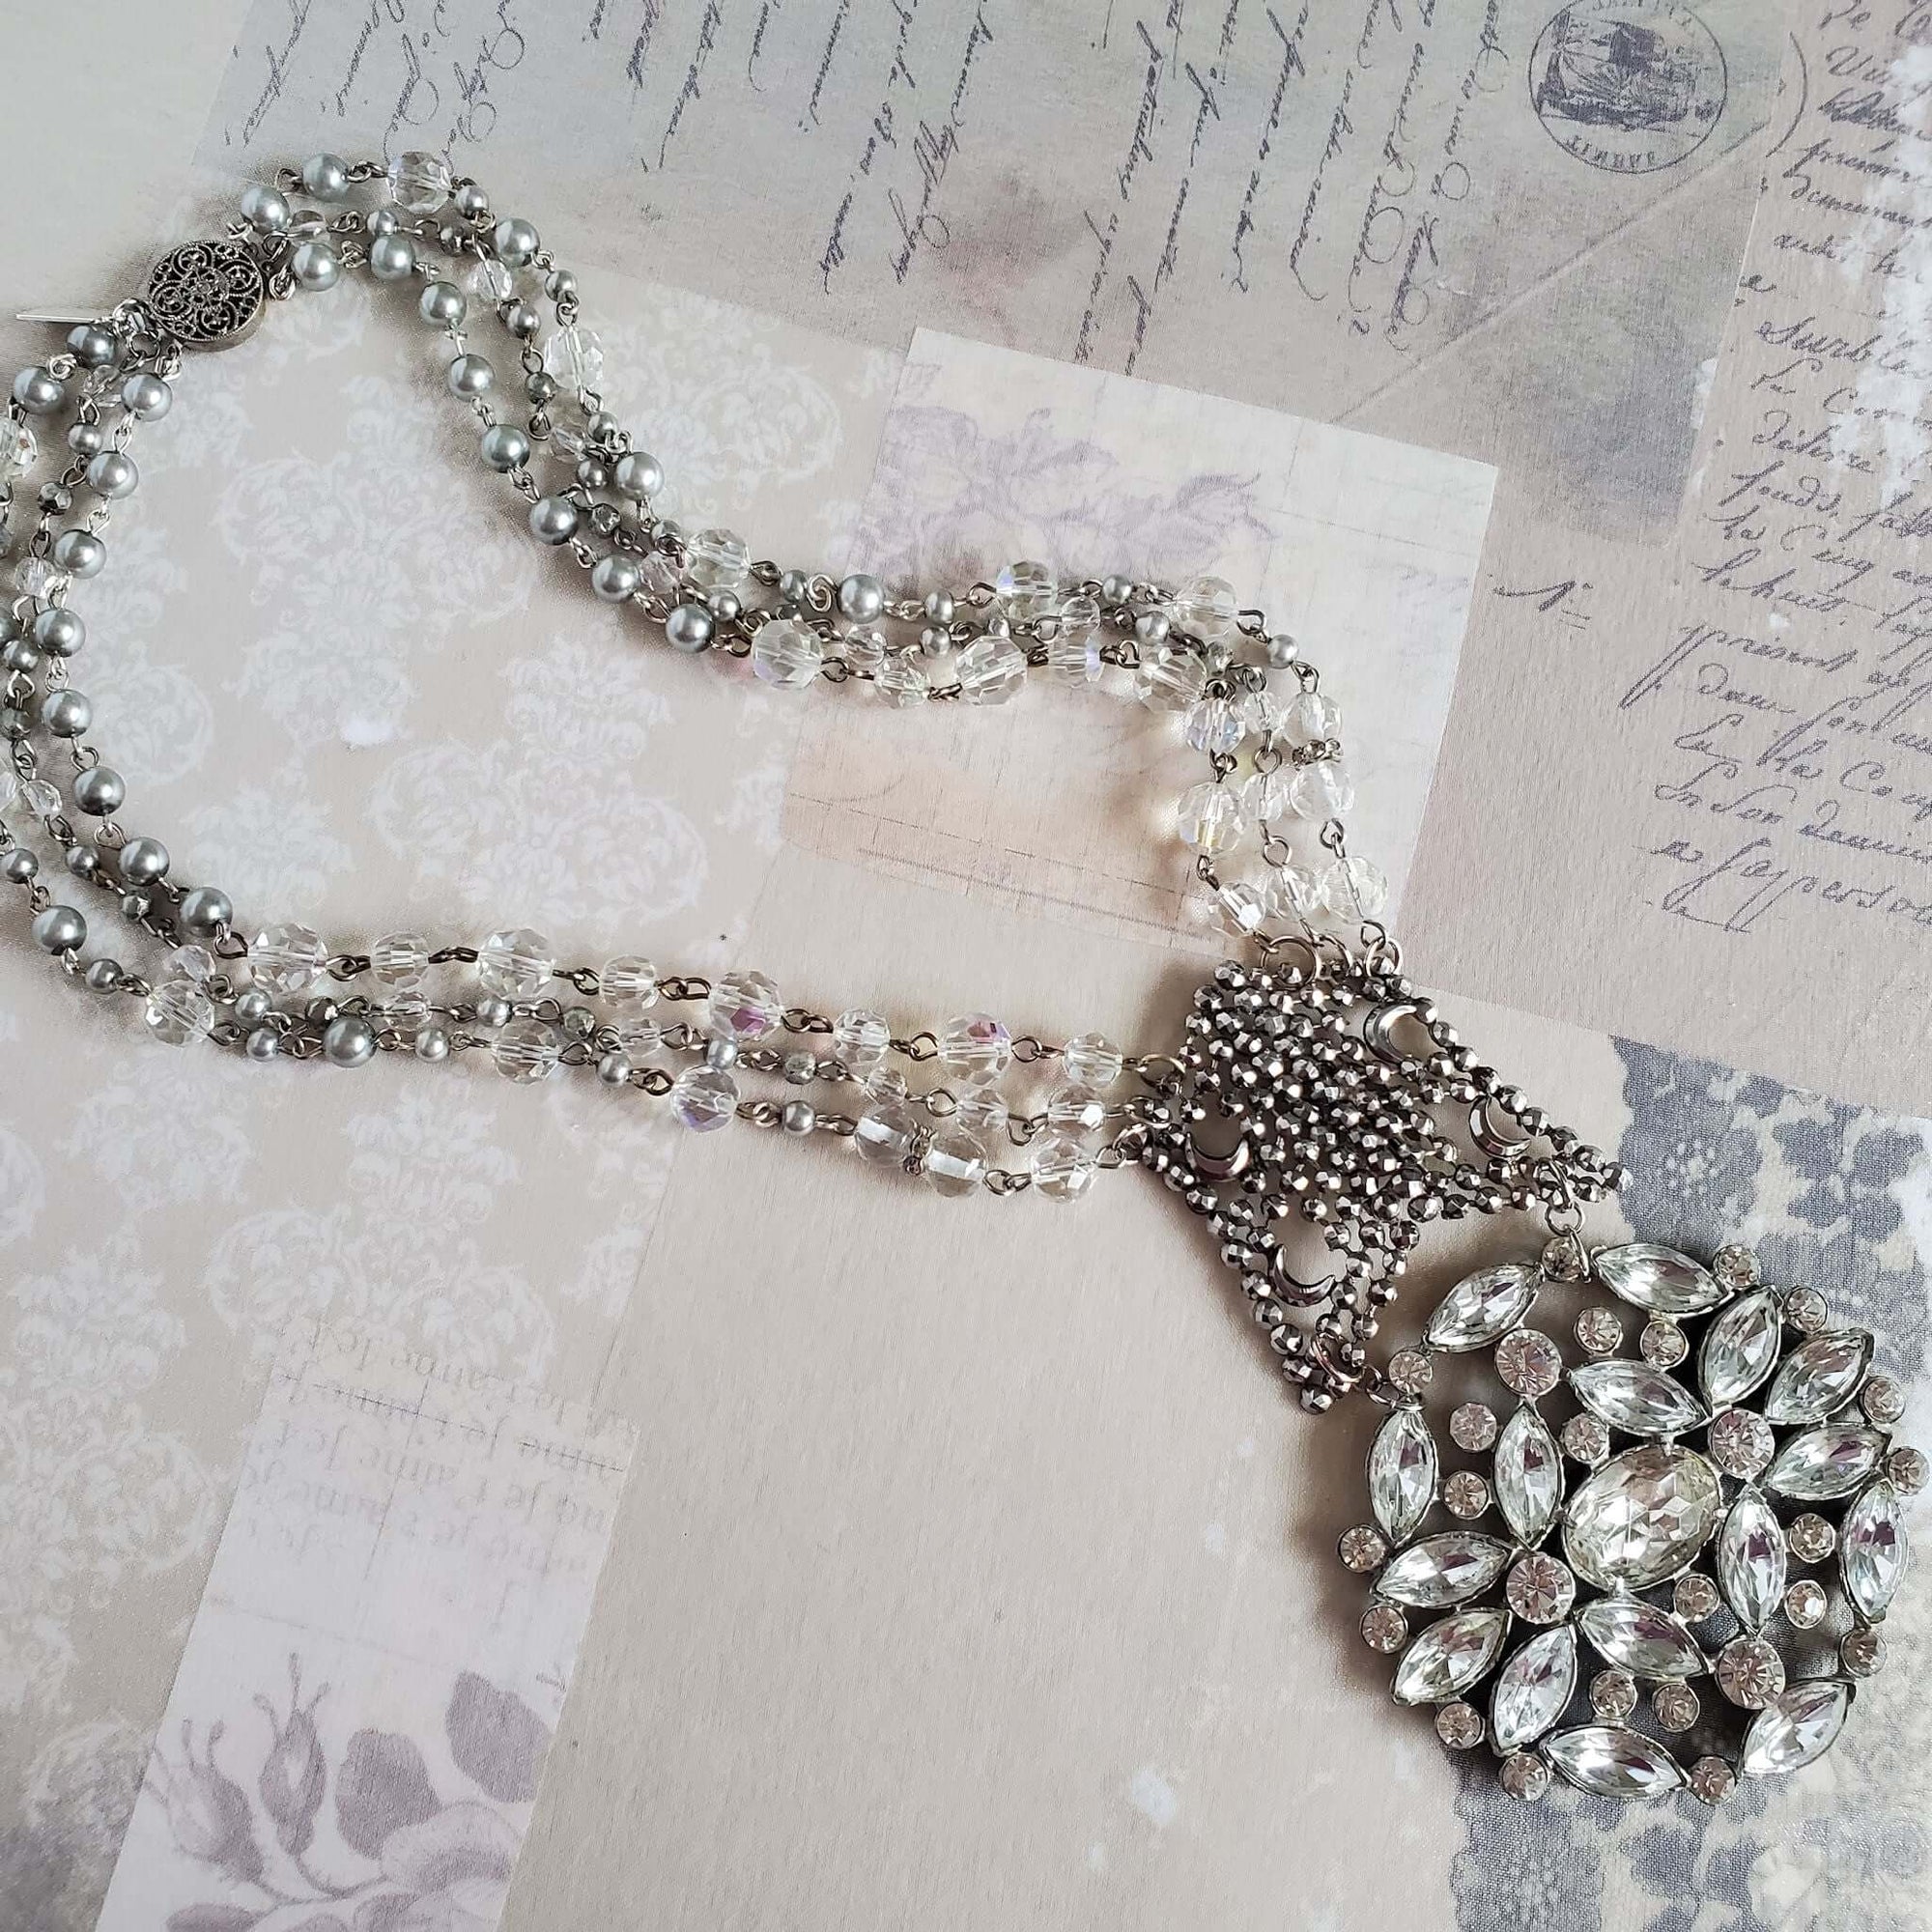 Antique Pendant Necklace